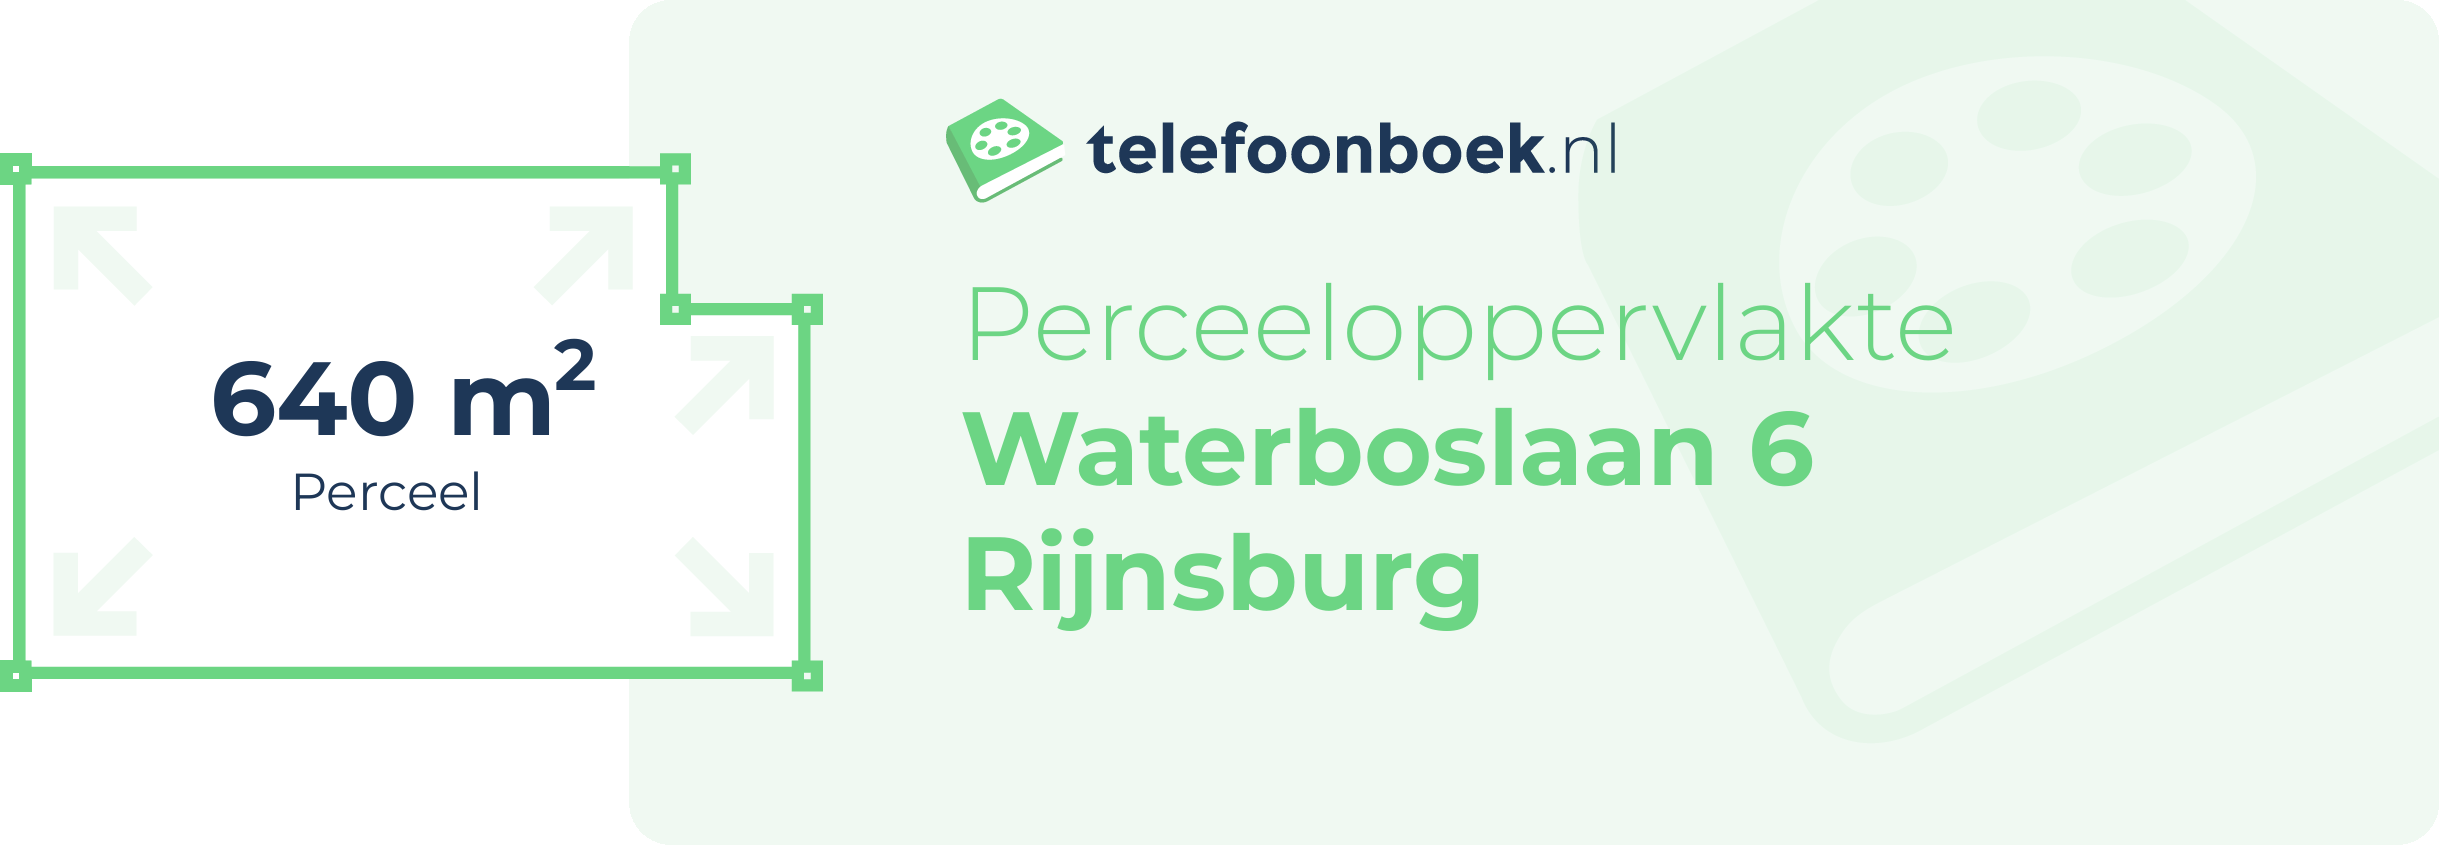 Perceeloppervlakte Waterboslaan 6 Rijnsburg